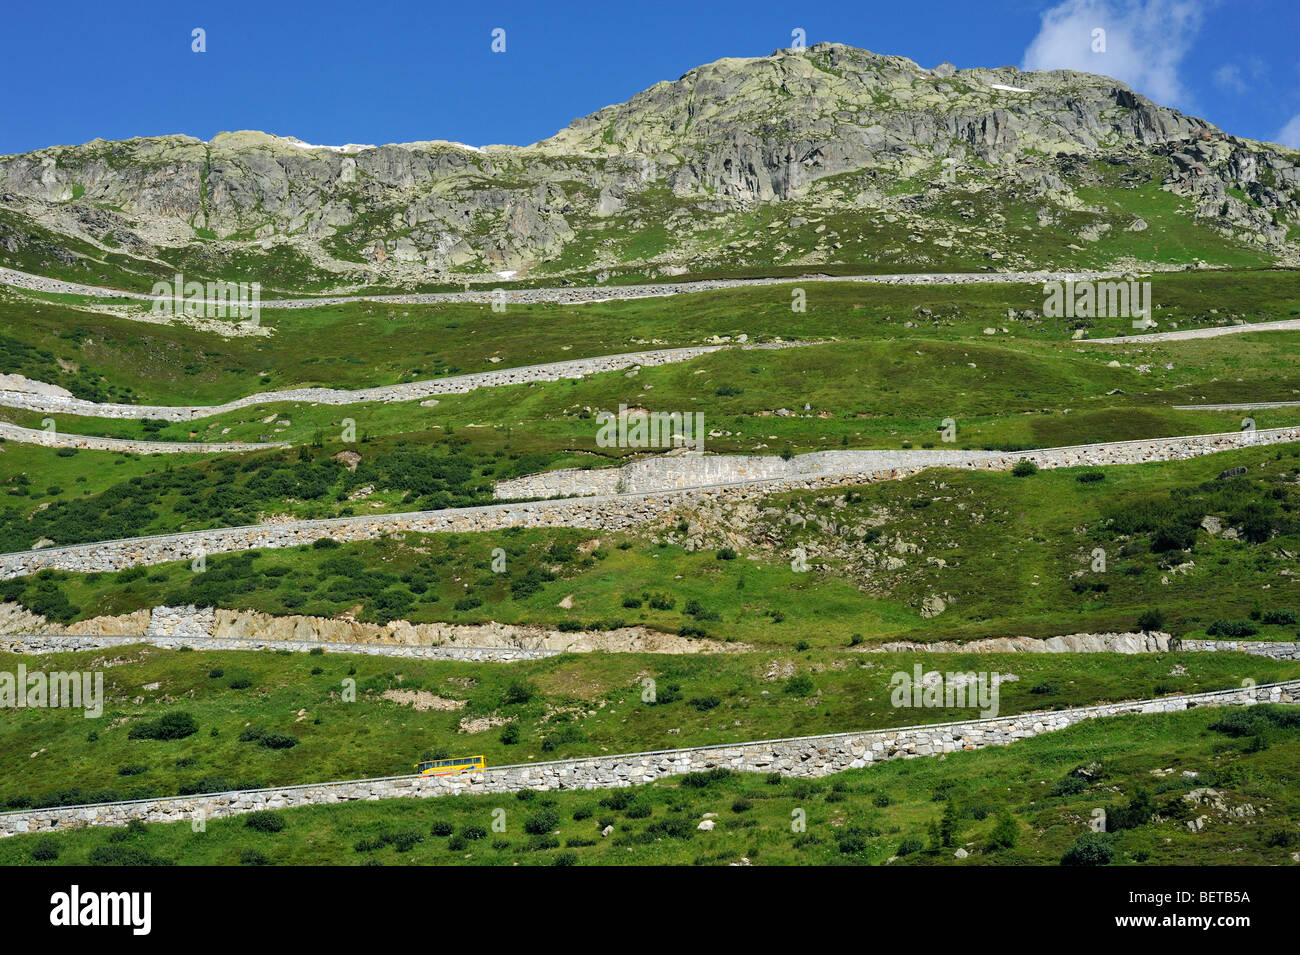 Carretera con curvas sinuosas en el Grimsel Pass en los Alpes Suizos, Suiza Foto de stock